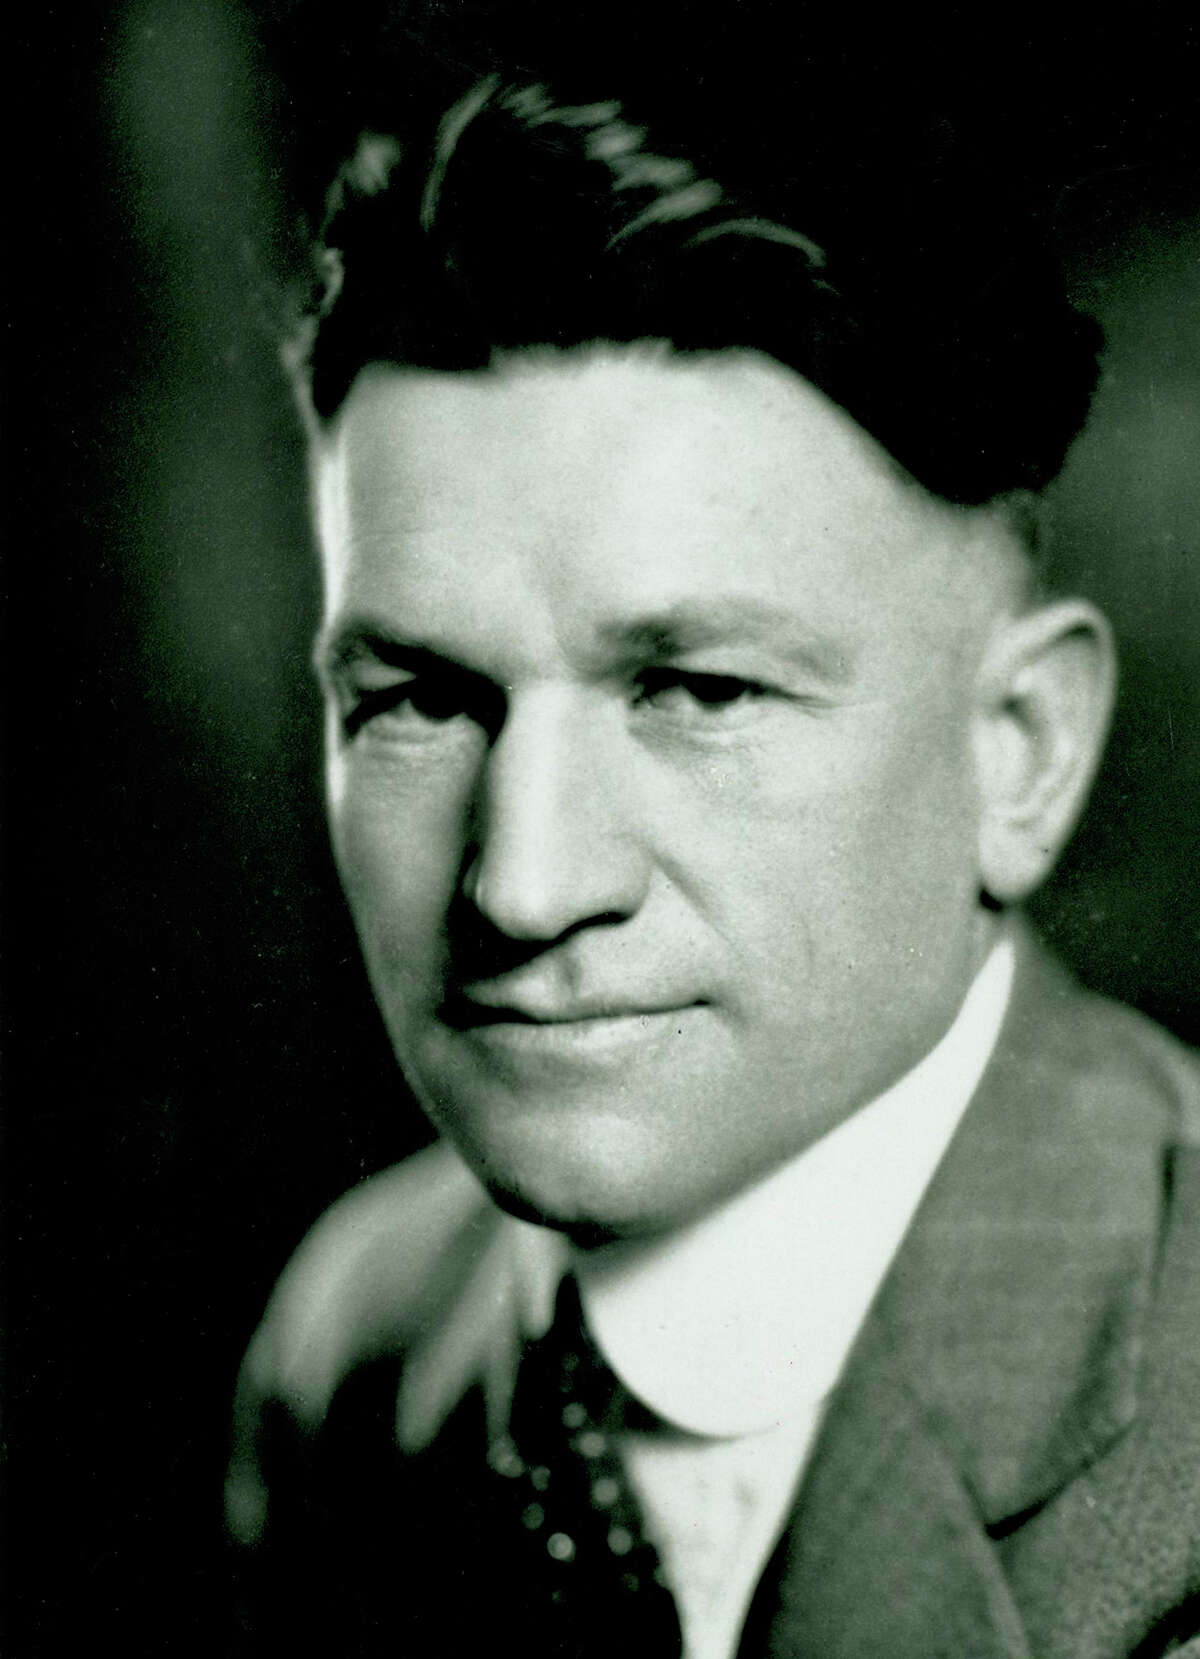 A youthful Howard E. Butt Sr. in a photo taken in 1935.